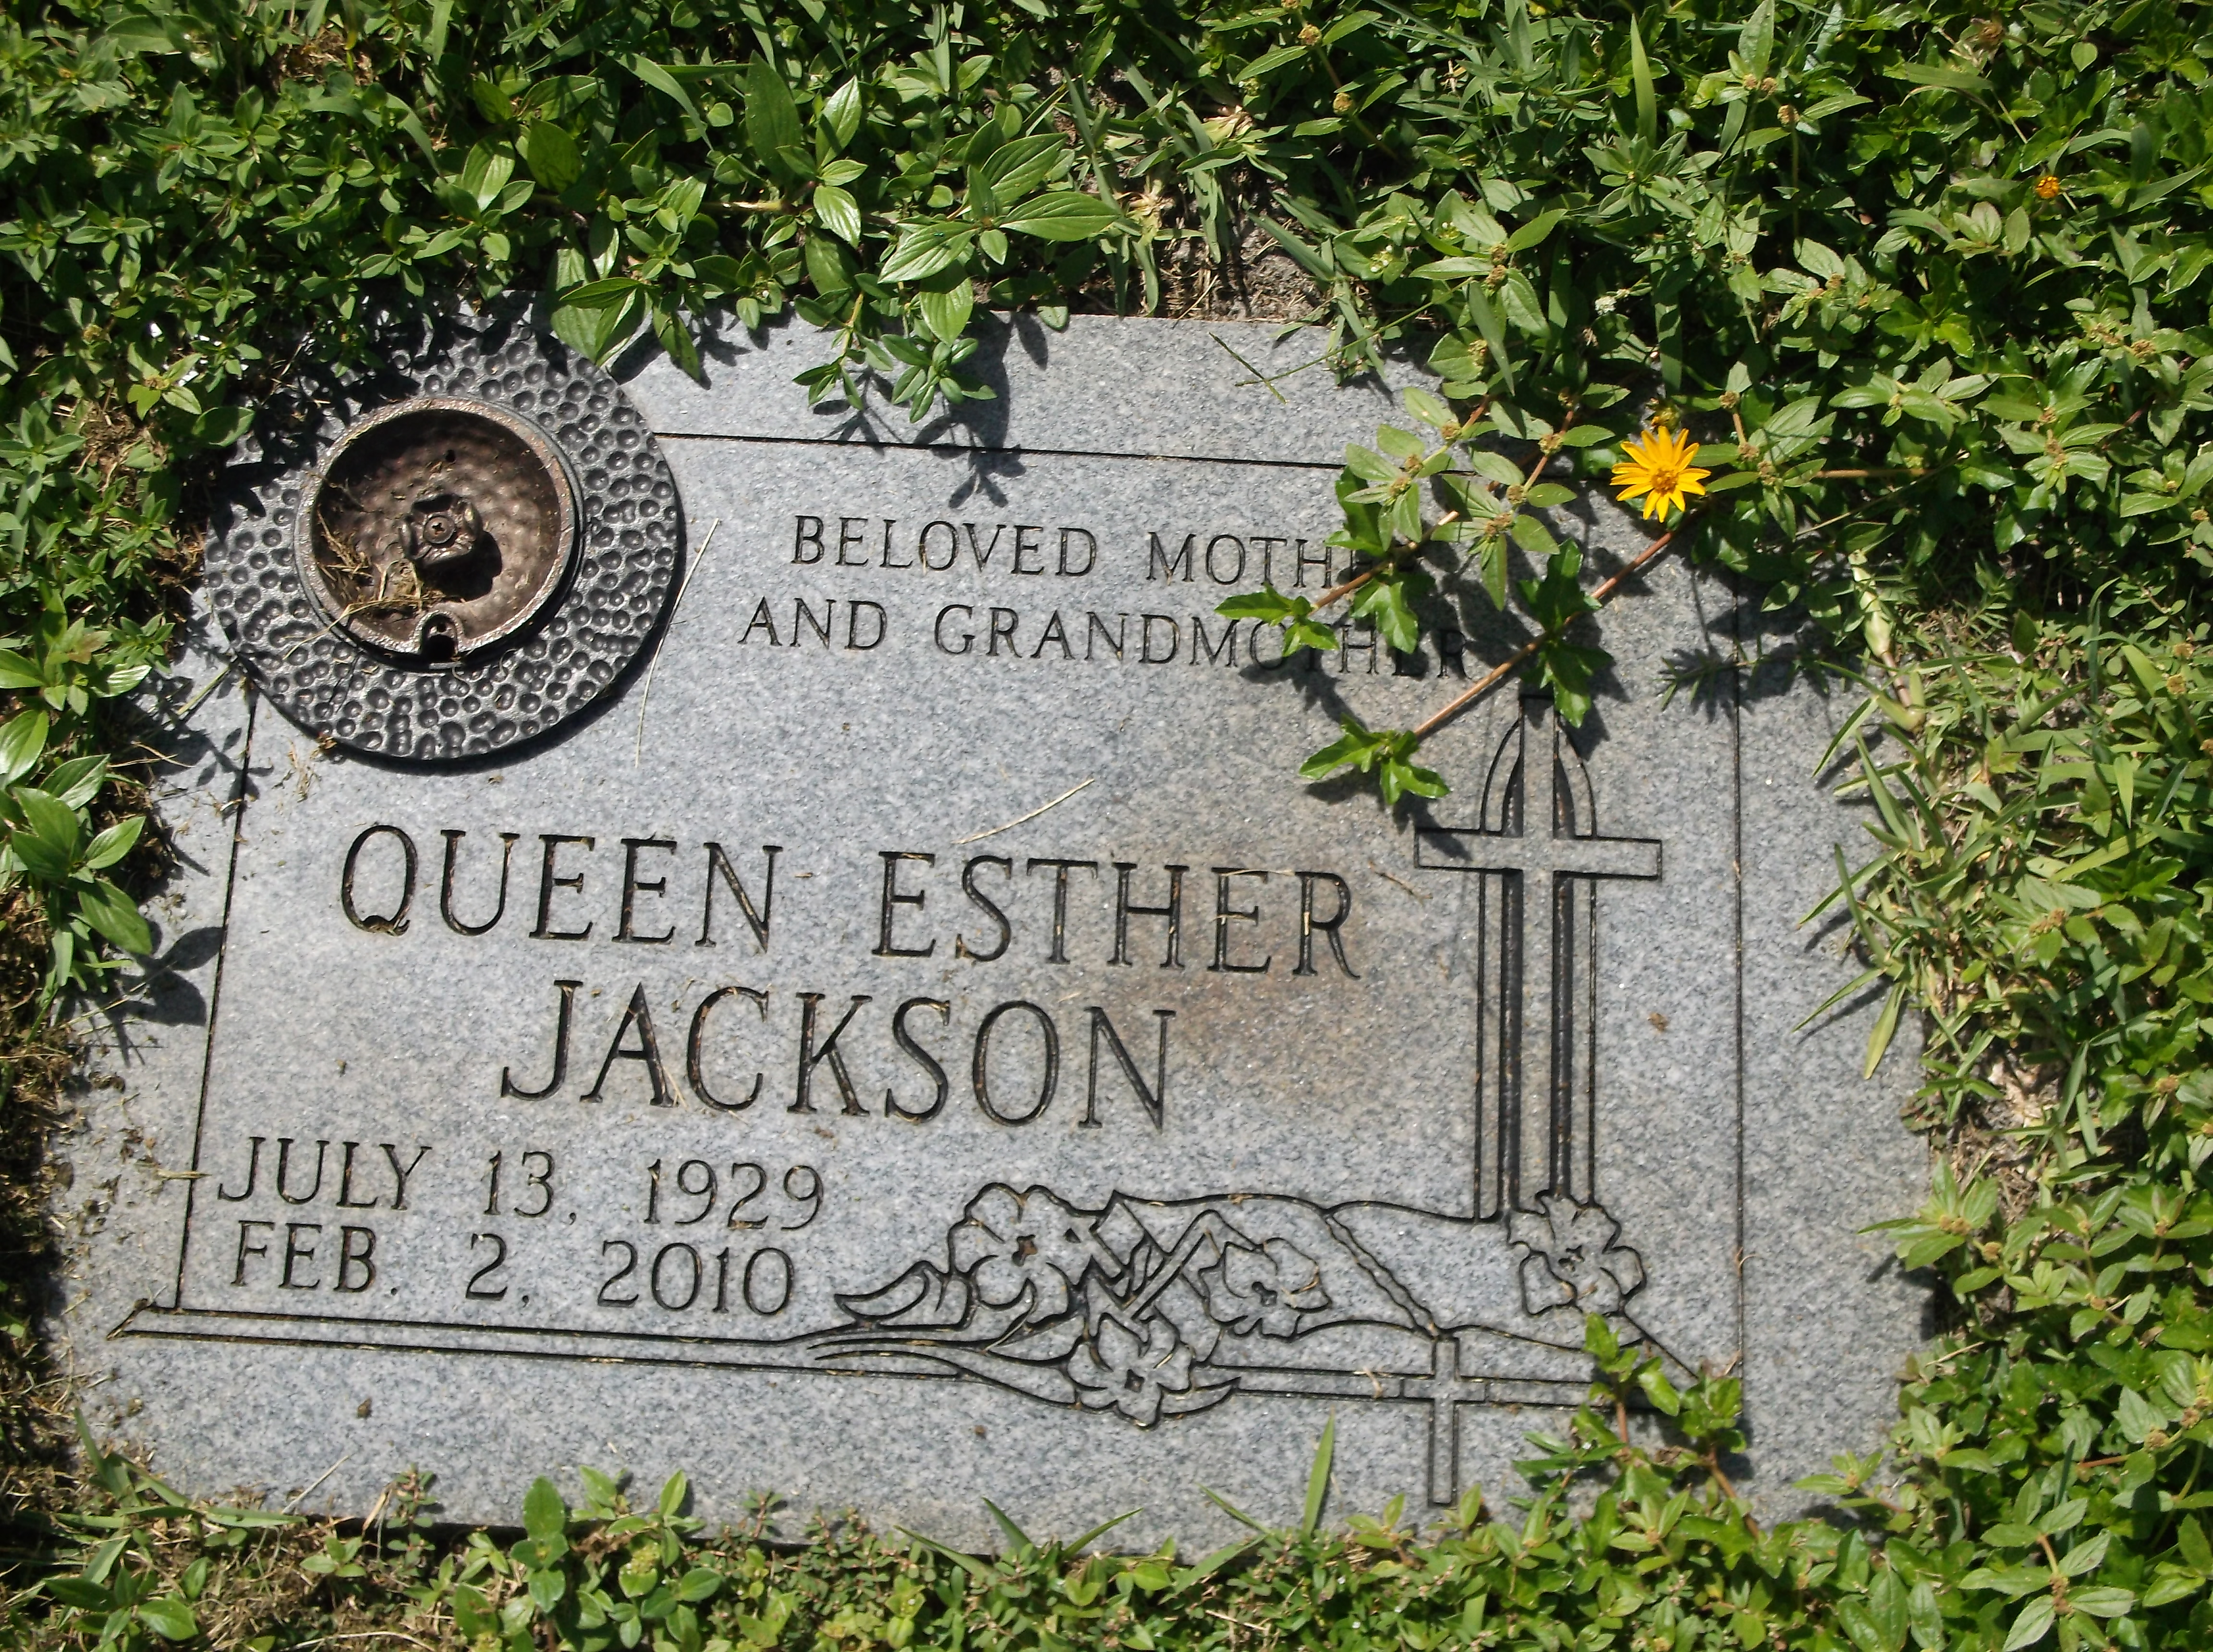 Queen Esther Jackson